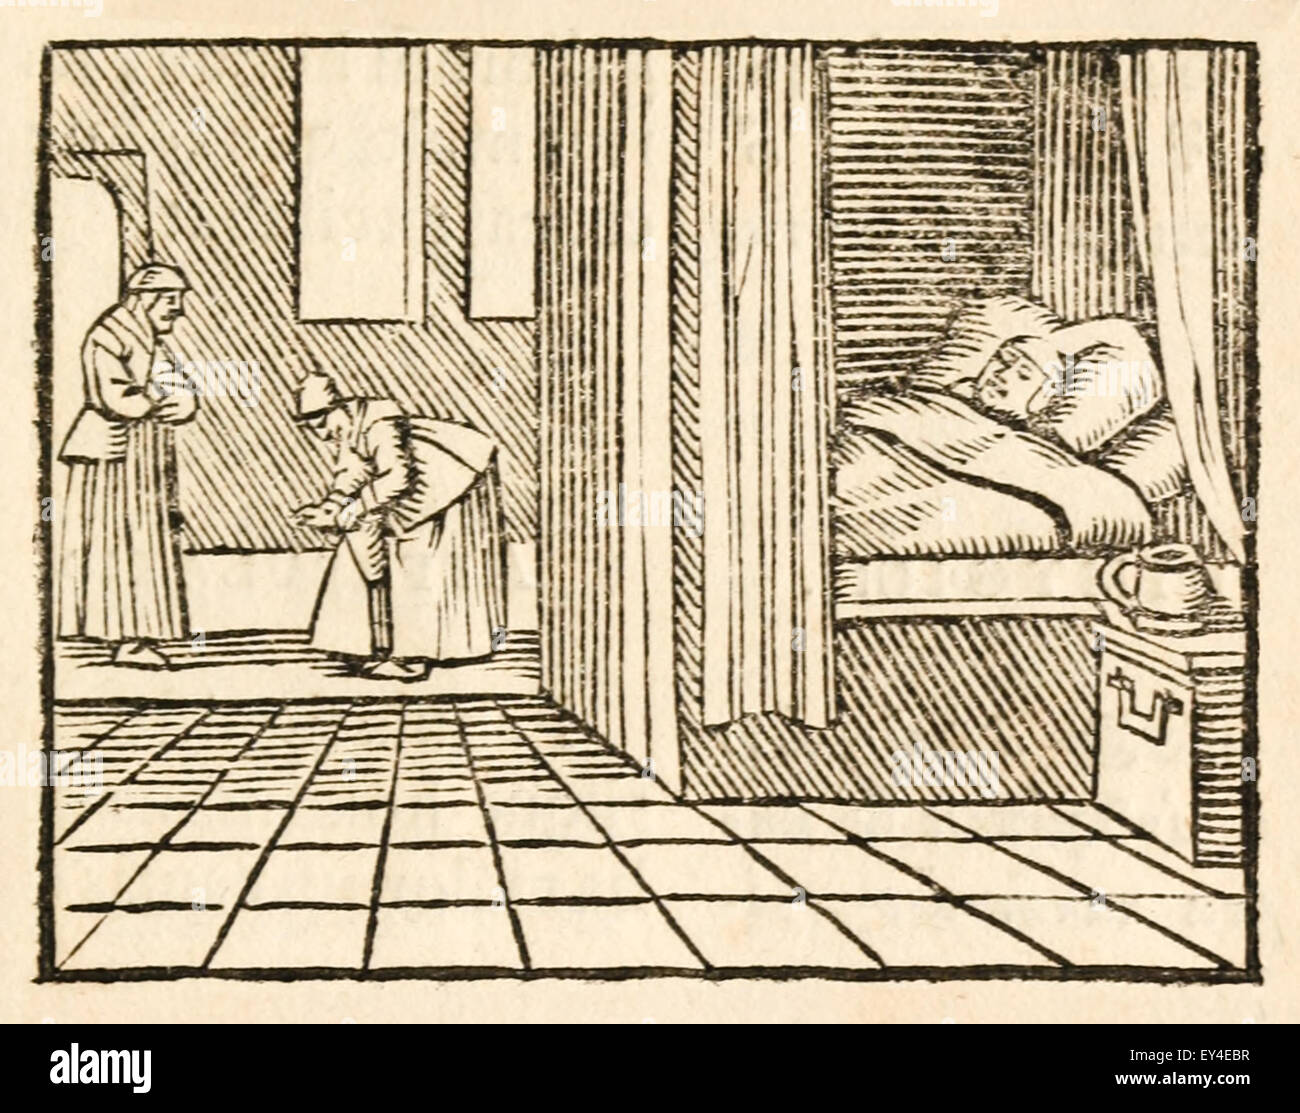 "Die Zimmermädchen und der Hahn" Fabel von Aesop (ca. 600). Eine Witwe war von Jungfrauen, die von einem Hahn geweckt. Sie töteten den Hahn. Die Witwe dann weckte sie jederzeit ohne Vorwarnung. Faulheit ist seine eigene Bestrafung. 17. Jahrhundert Holzschnitt Drucken zur Veranschaulichung Aesop Fabeln. Siehe Beschreibung für mehr Informationen. Stockfoto